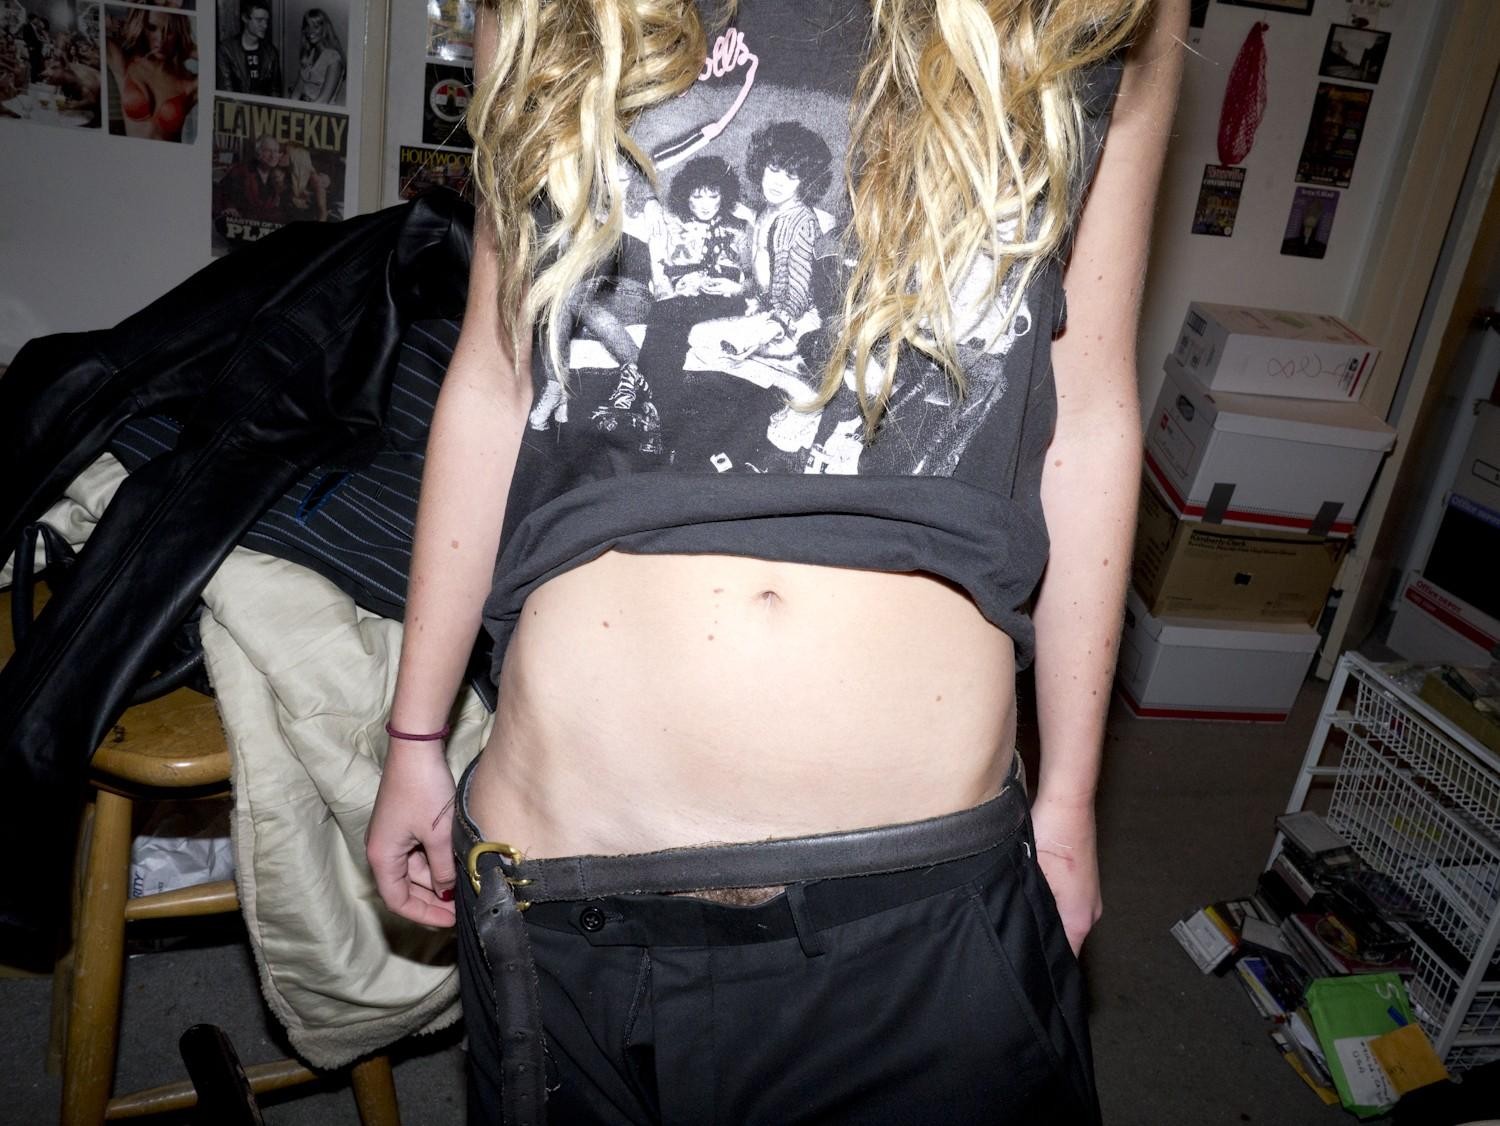 Chelsea schuchman che mostra le sue tette e figa pelosa in una foto di brad elterman
 #75172718